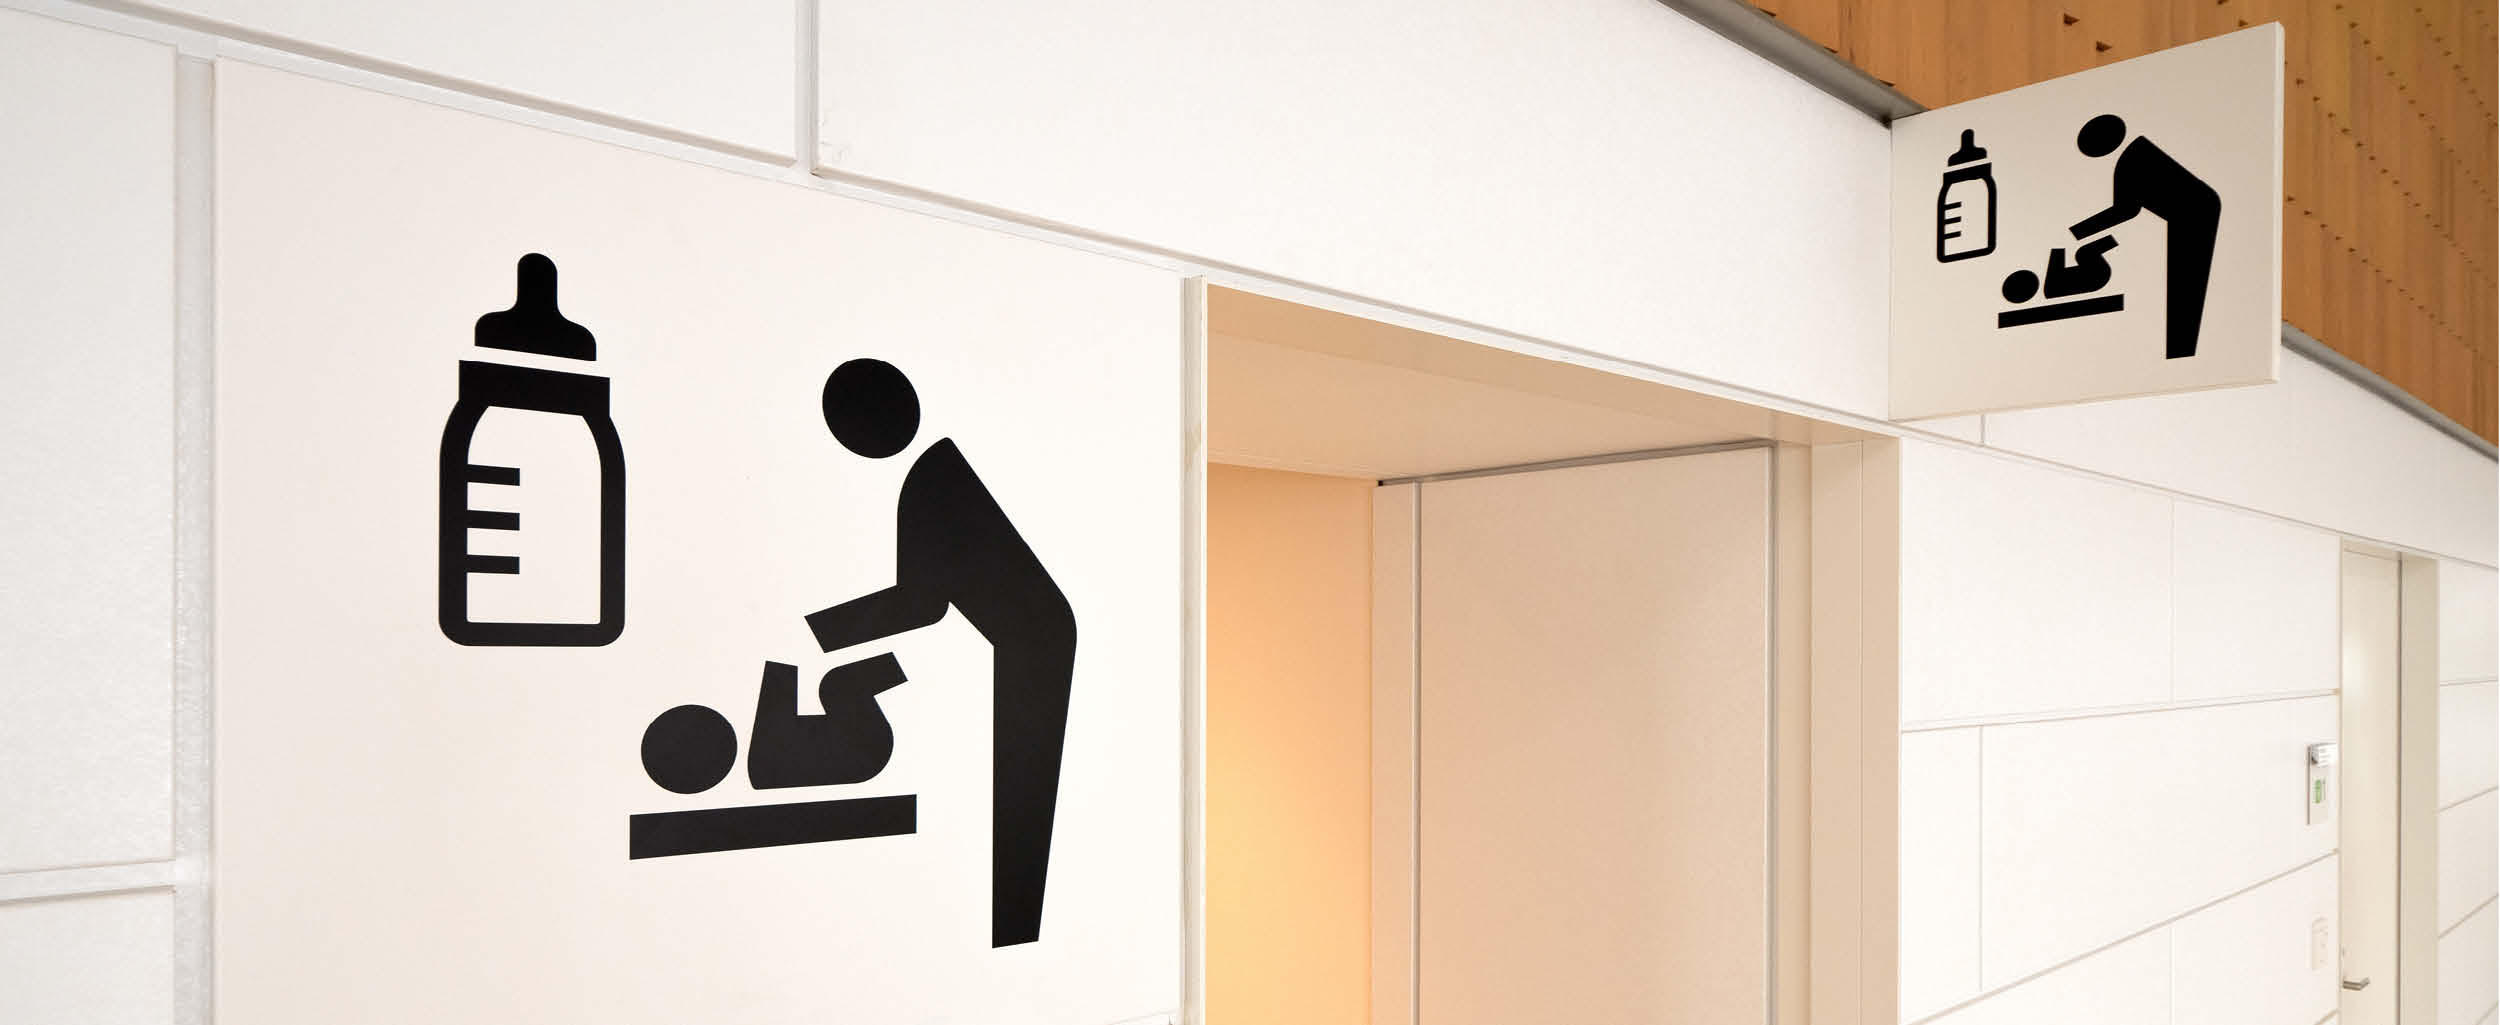 Znaczenie dostępnych i bezpiecznych przewijaków w toaletach publicznych